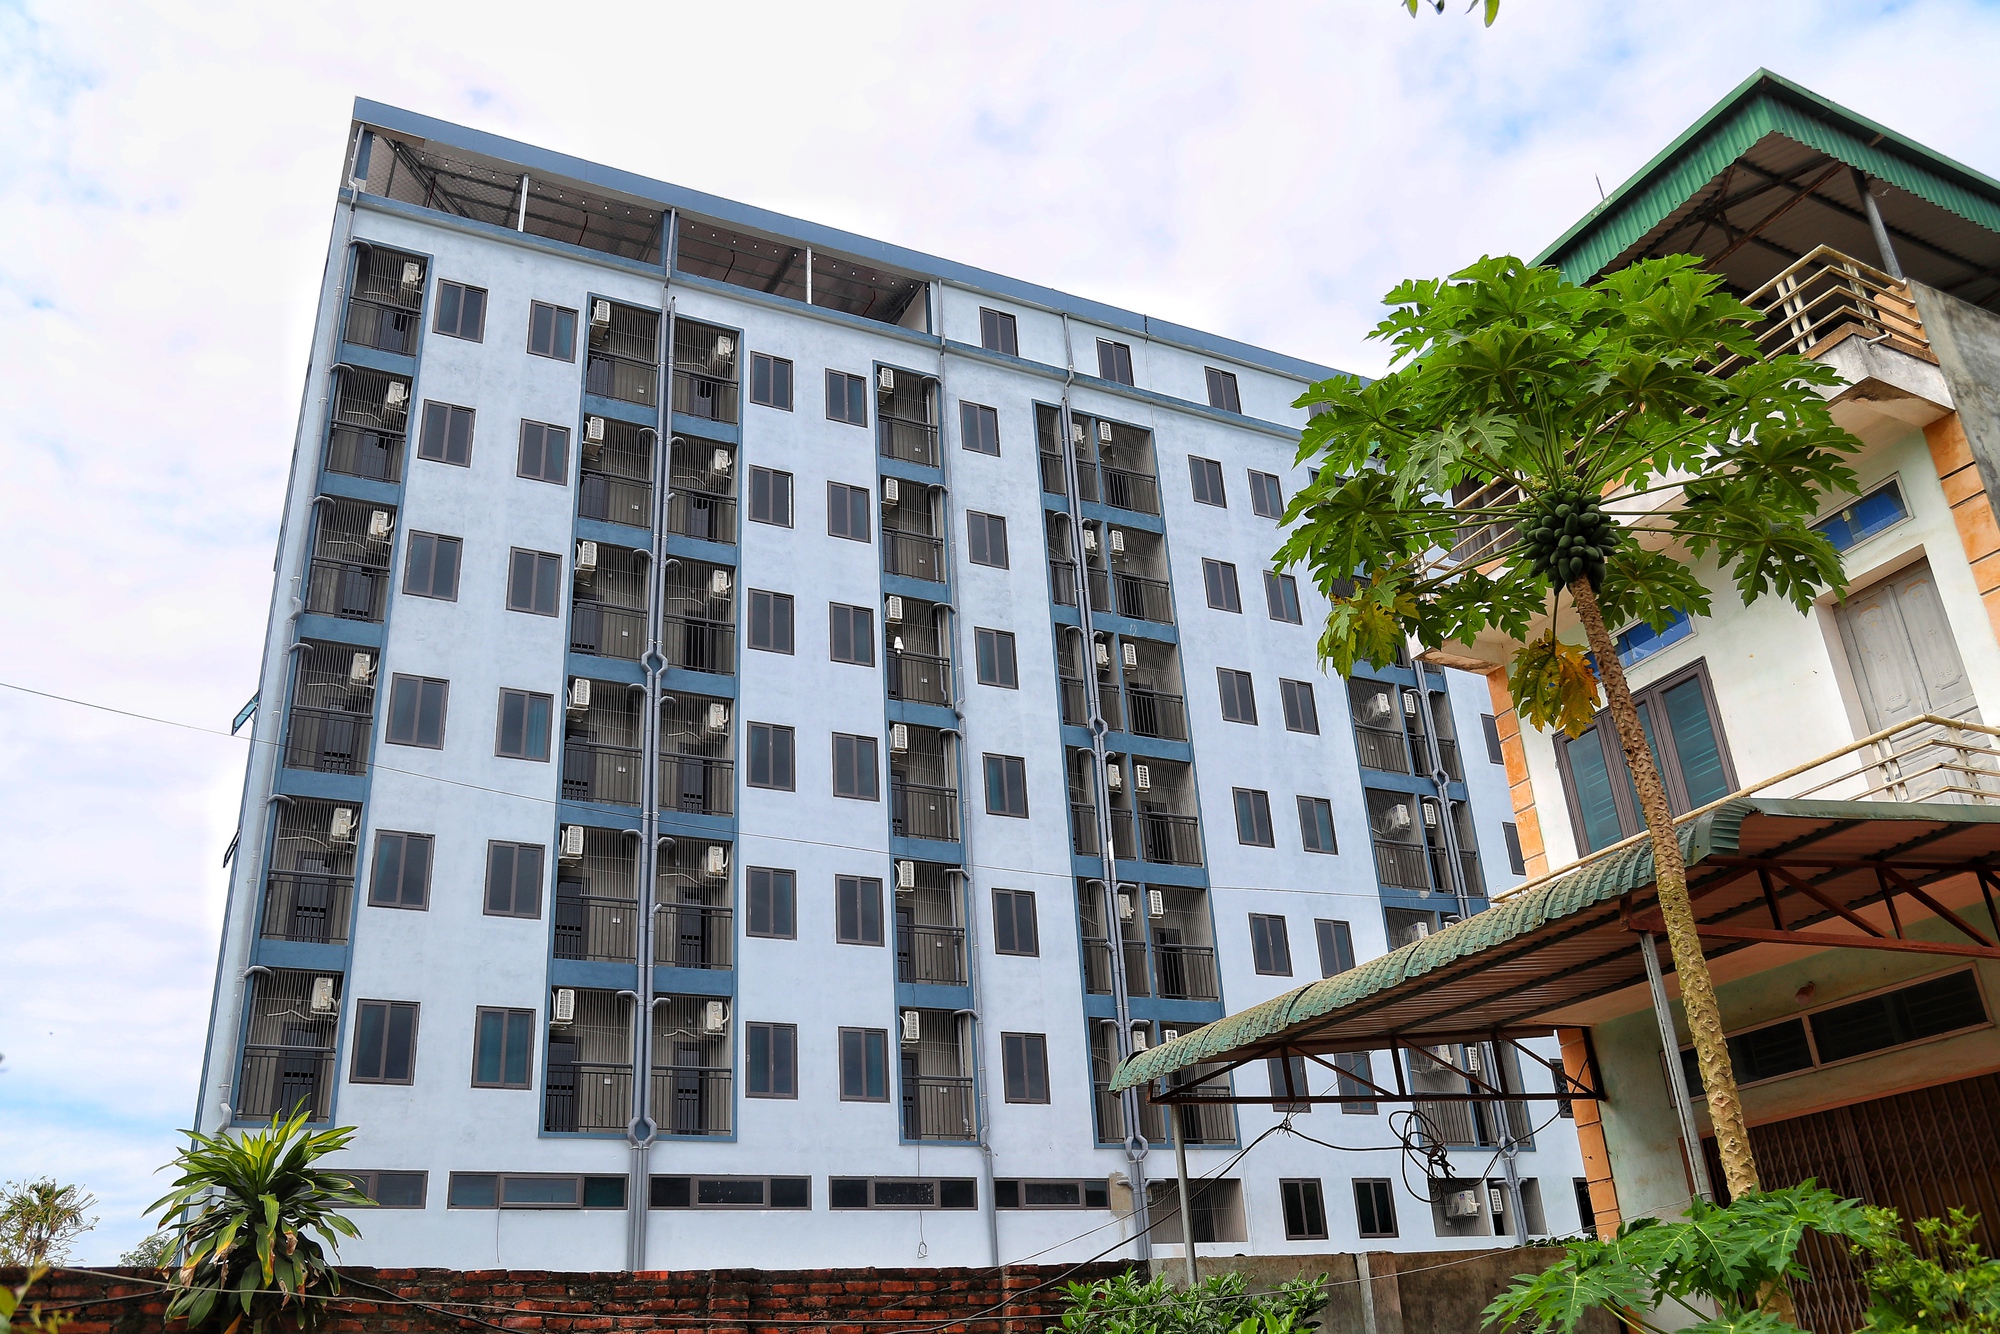 Cận cảnh chung cư mini ở Hà Nội xây vượt nhiều tầng bị 'tuýt còi' - Ảnh 6.